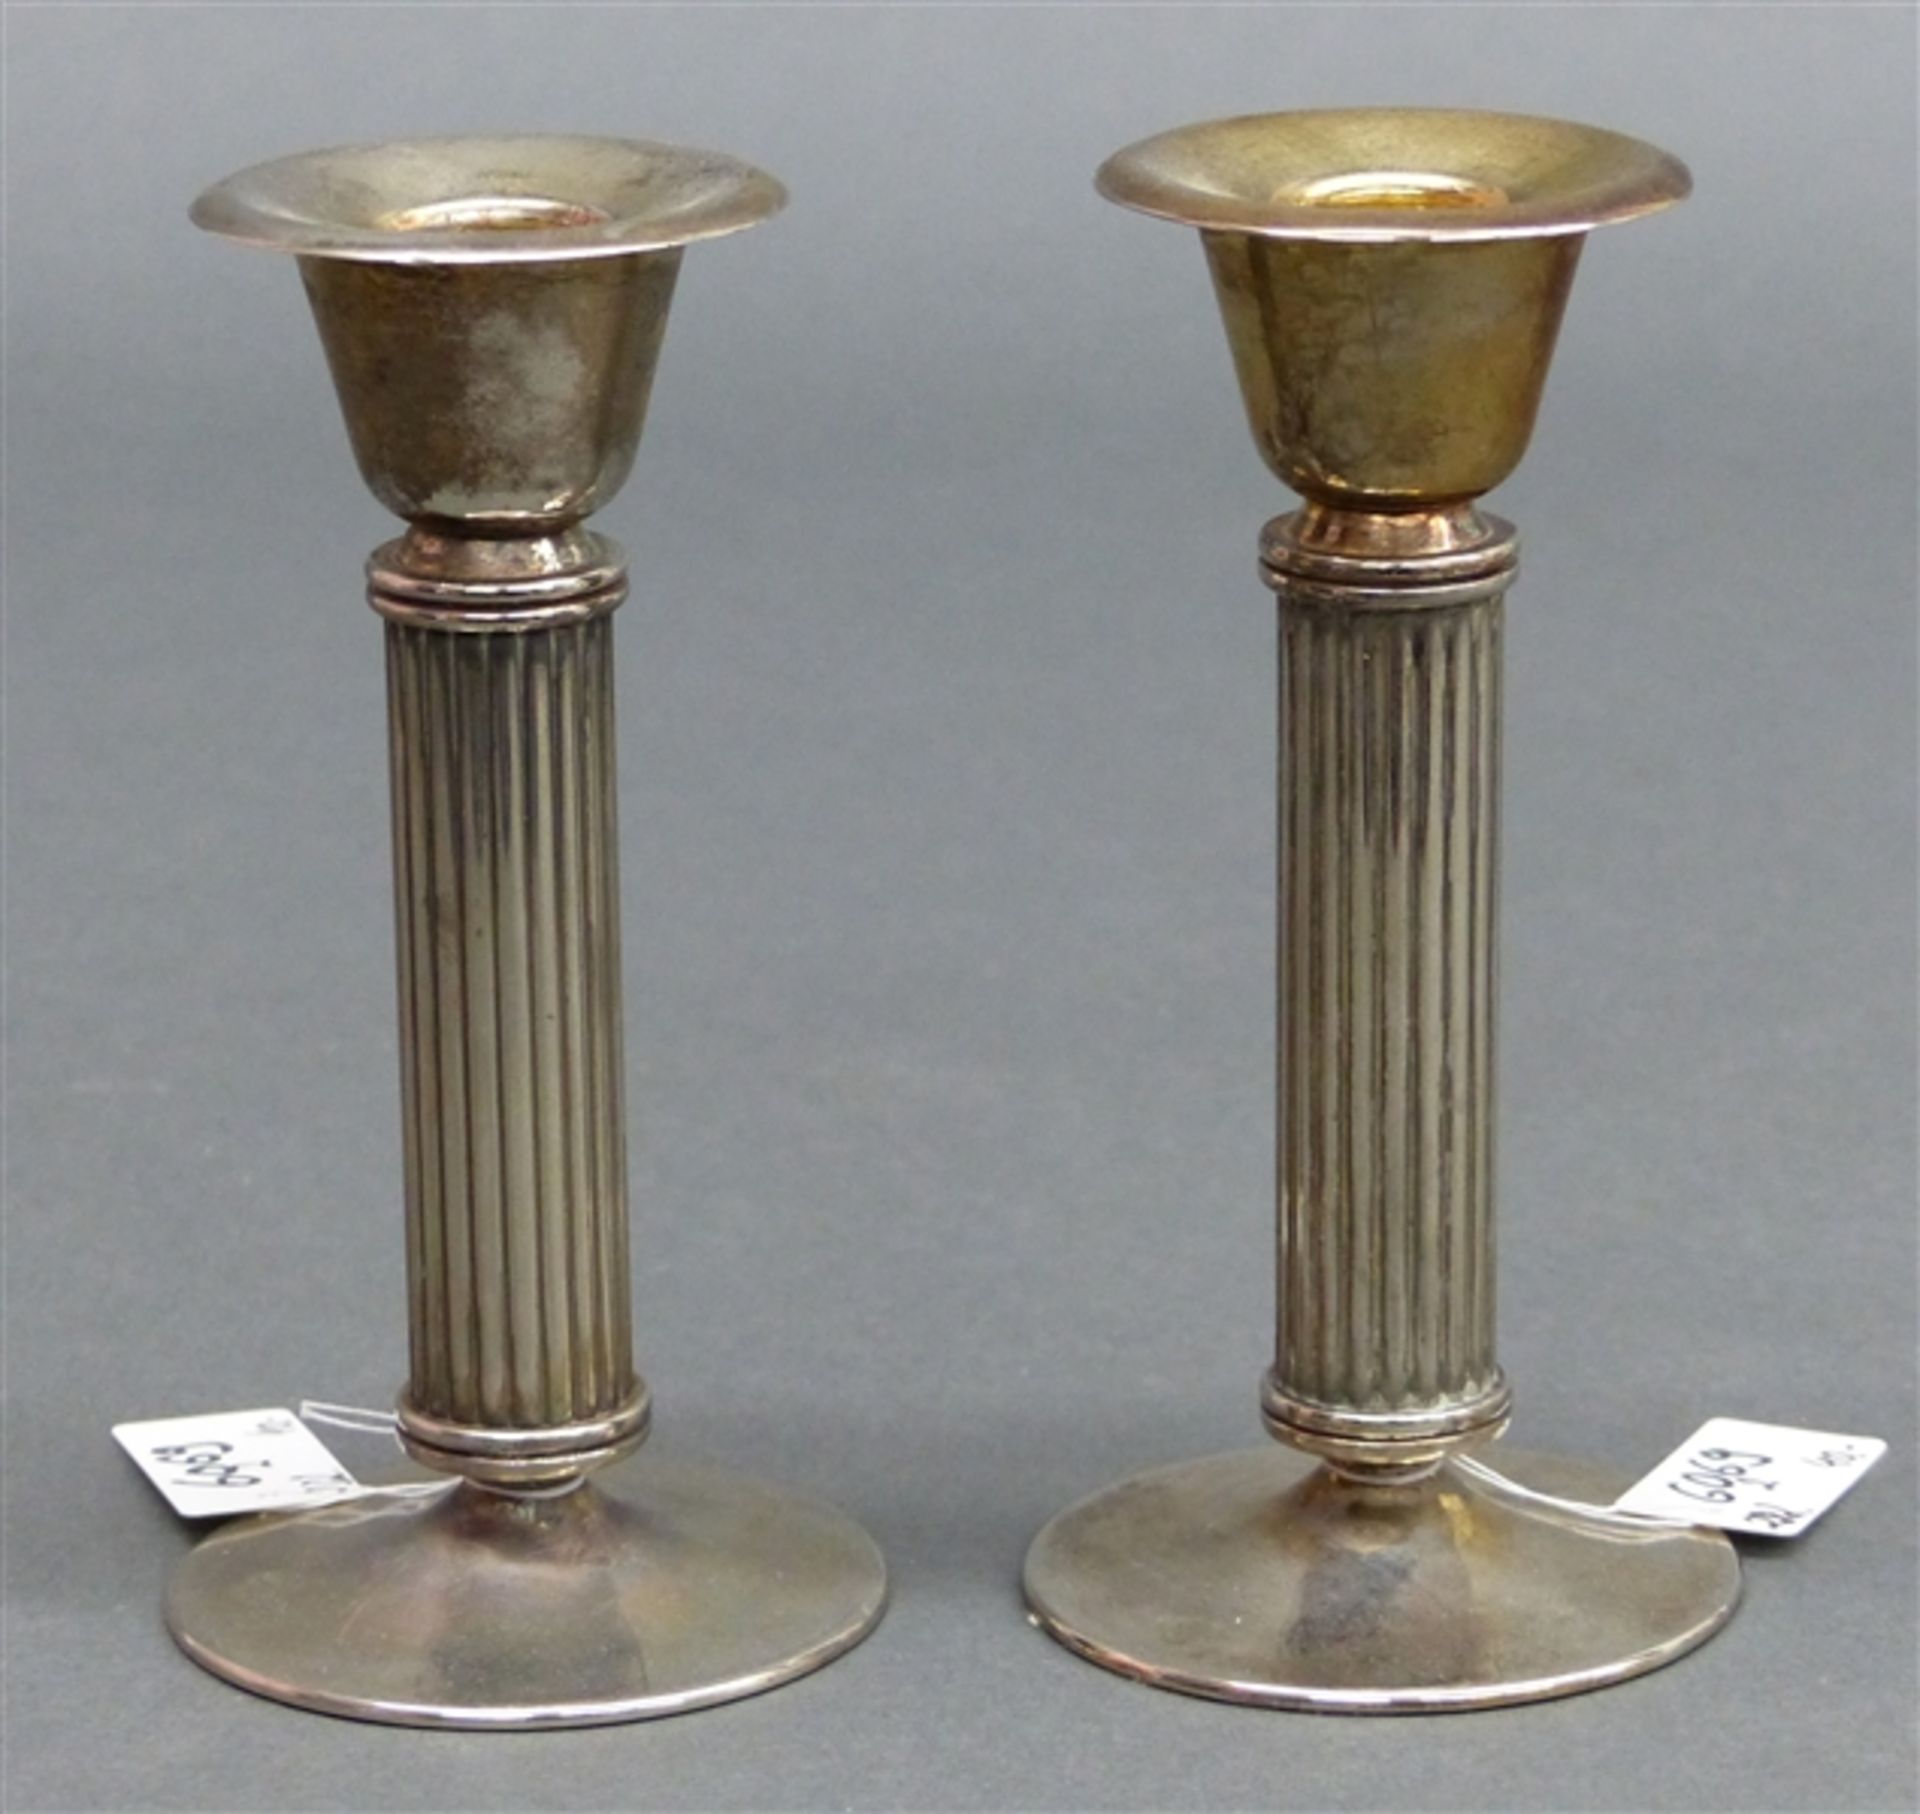 Paar Kerzenleuchter Metall, versilbert, 20. Jh., h 13 cm.,